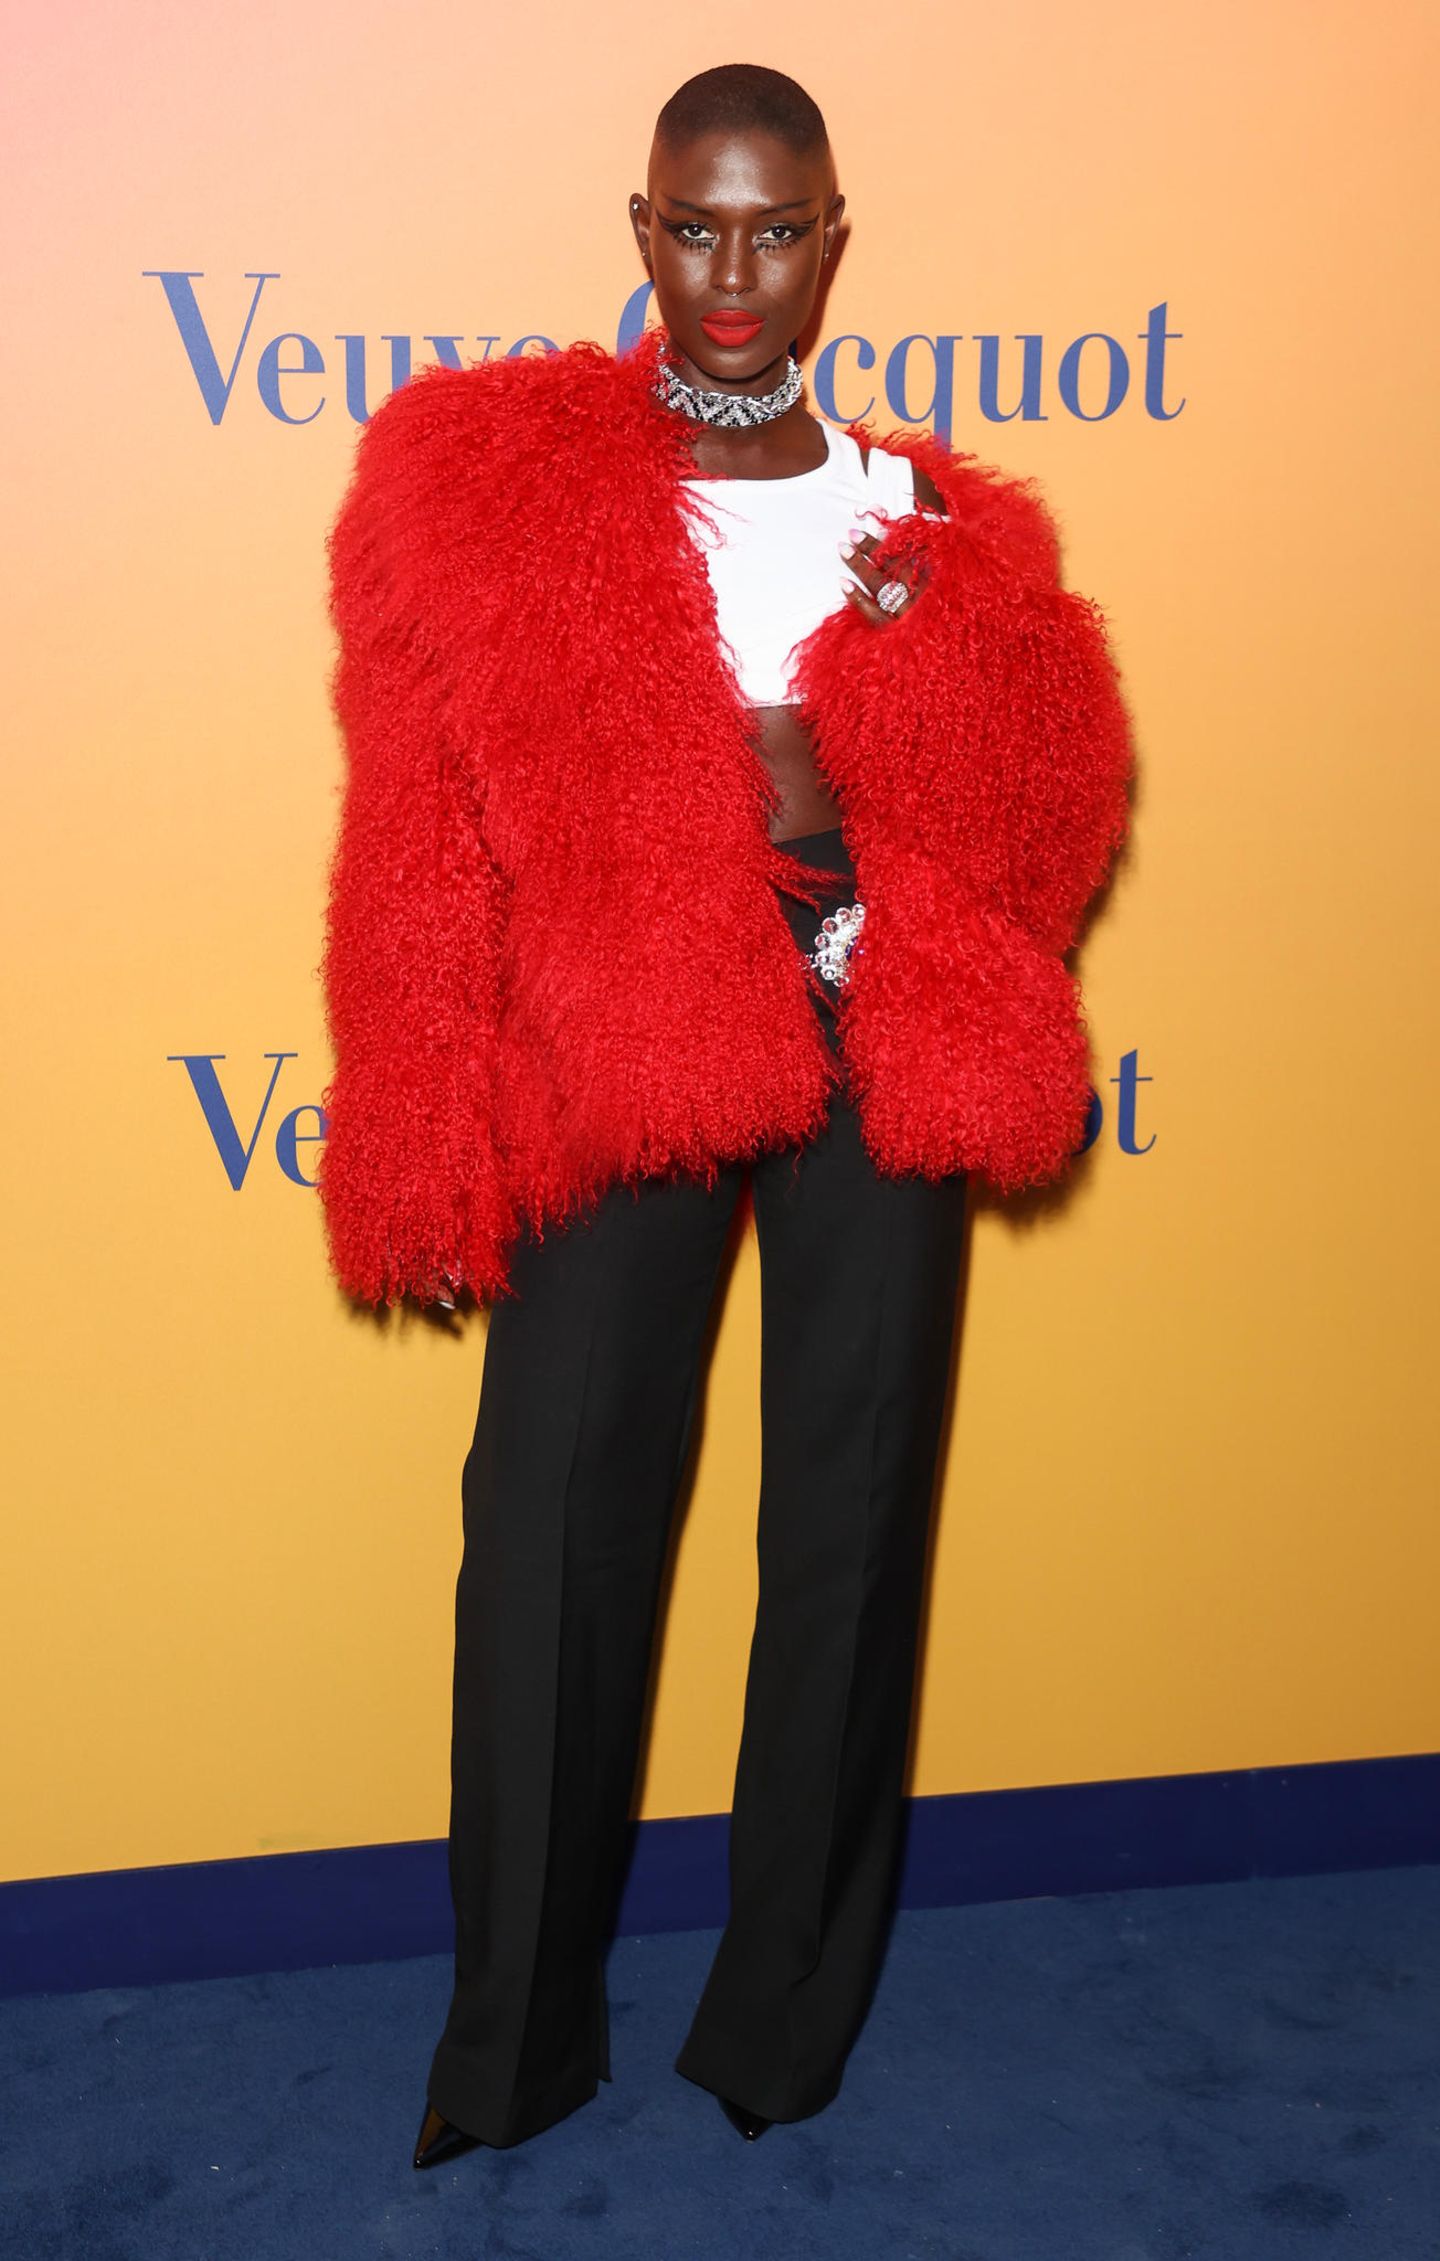 Mit dieser flauschigen Jacke setzt sie ein Fashion-Statement: Bei der Eröffnung des Veuve Clicquot's Solaire Culture in London begeistert Schauspielerin Jodie Turner-Smith in lebhafter Farbe. Um ihrer Jacke mehr Ausdruck zu verleihen, besteht die Basis ihres Looks aus Basics. 